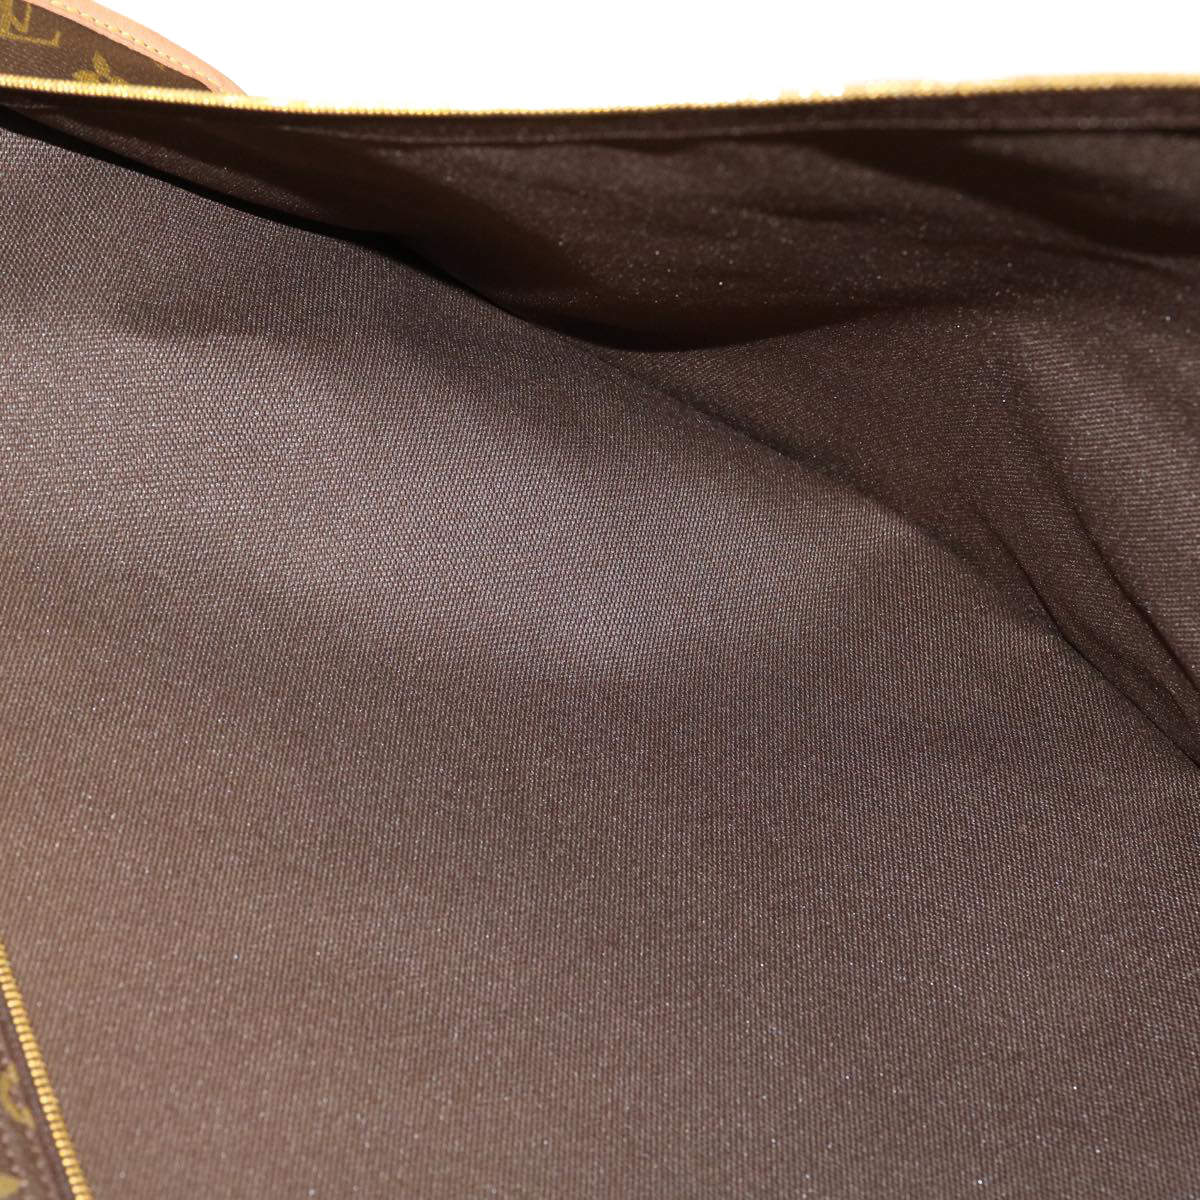 Garment cloth travel bag Louis Vuitton Brown in Cloth - 35041513